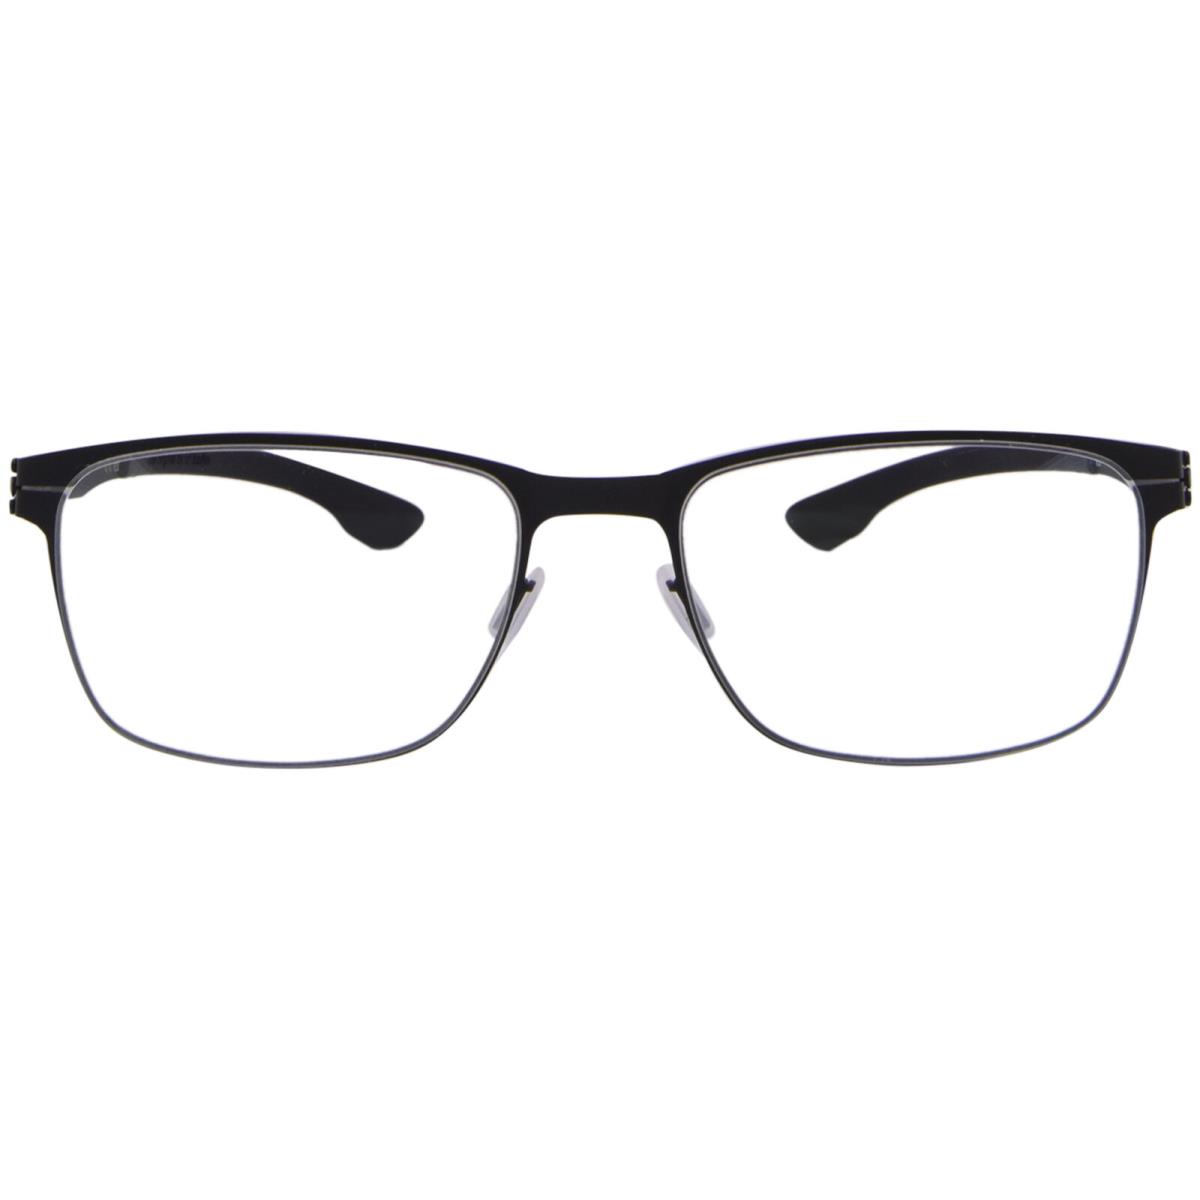 Ic Berlin Dennis-n Eyeglasses Men`s Black Full Rim Rectangle Shape 53mm